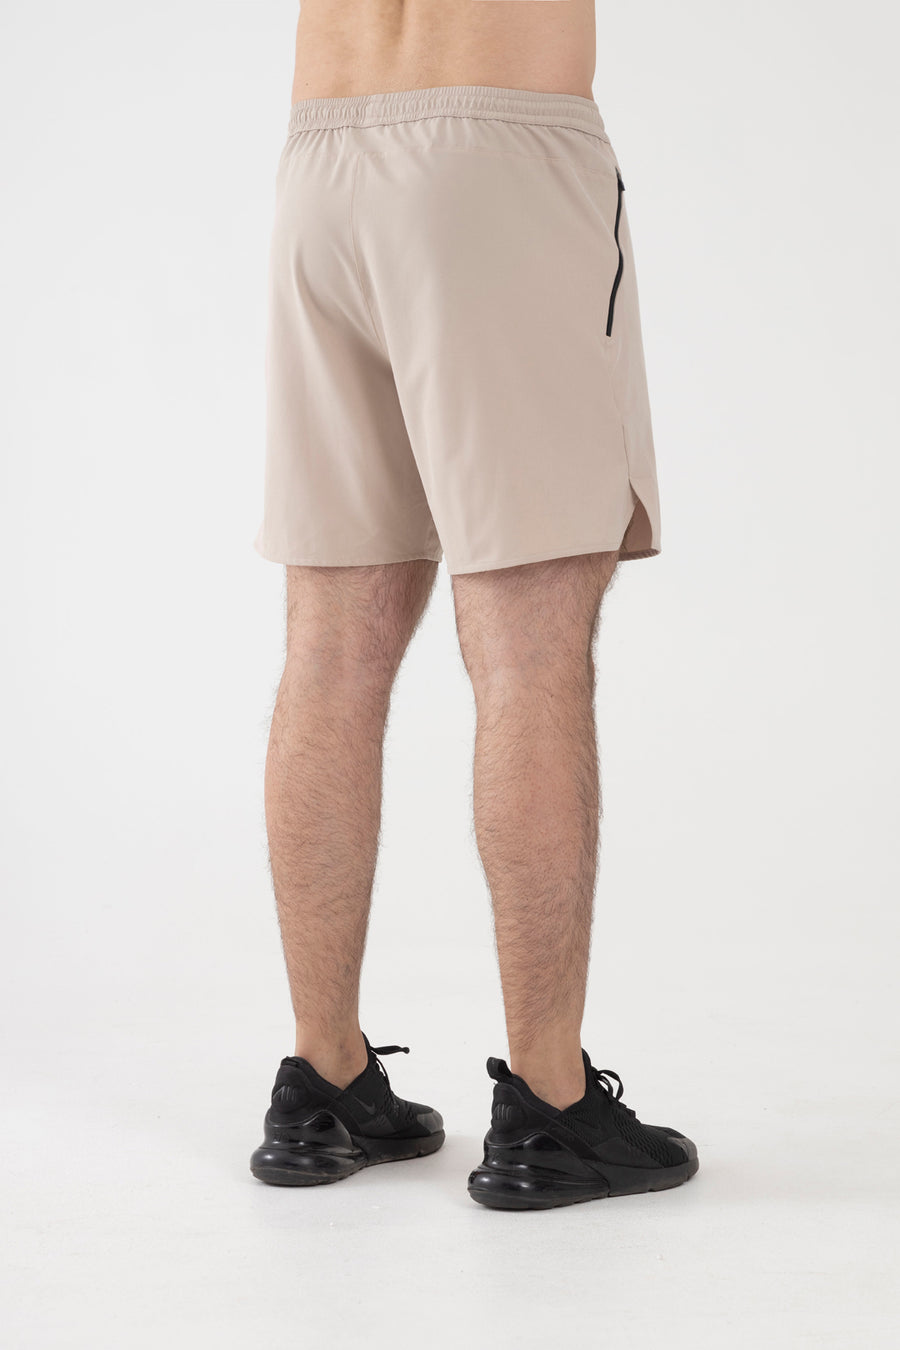 Classic Shorts (Beige)